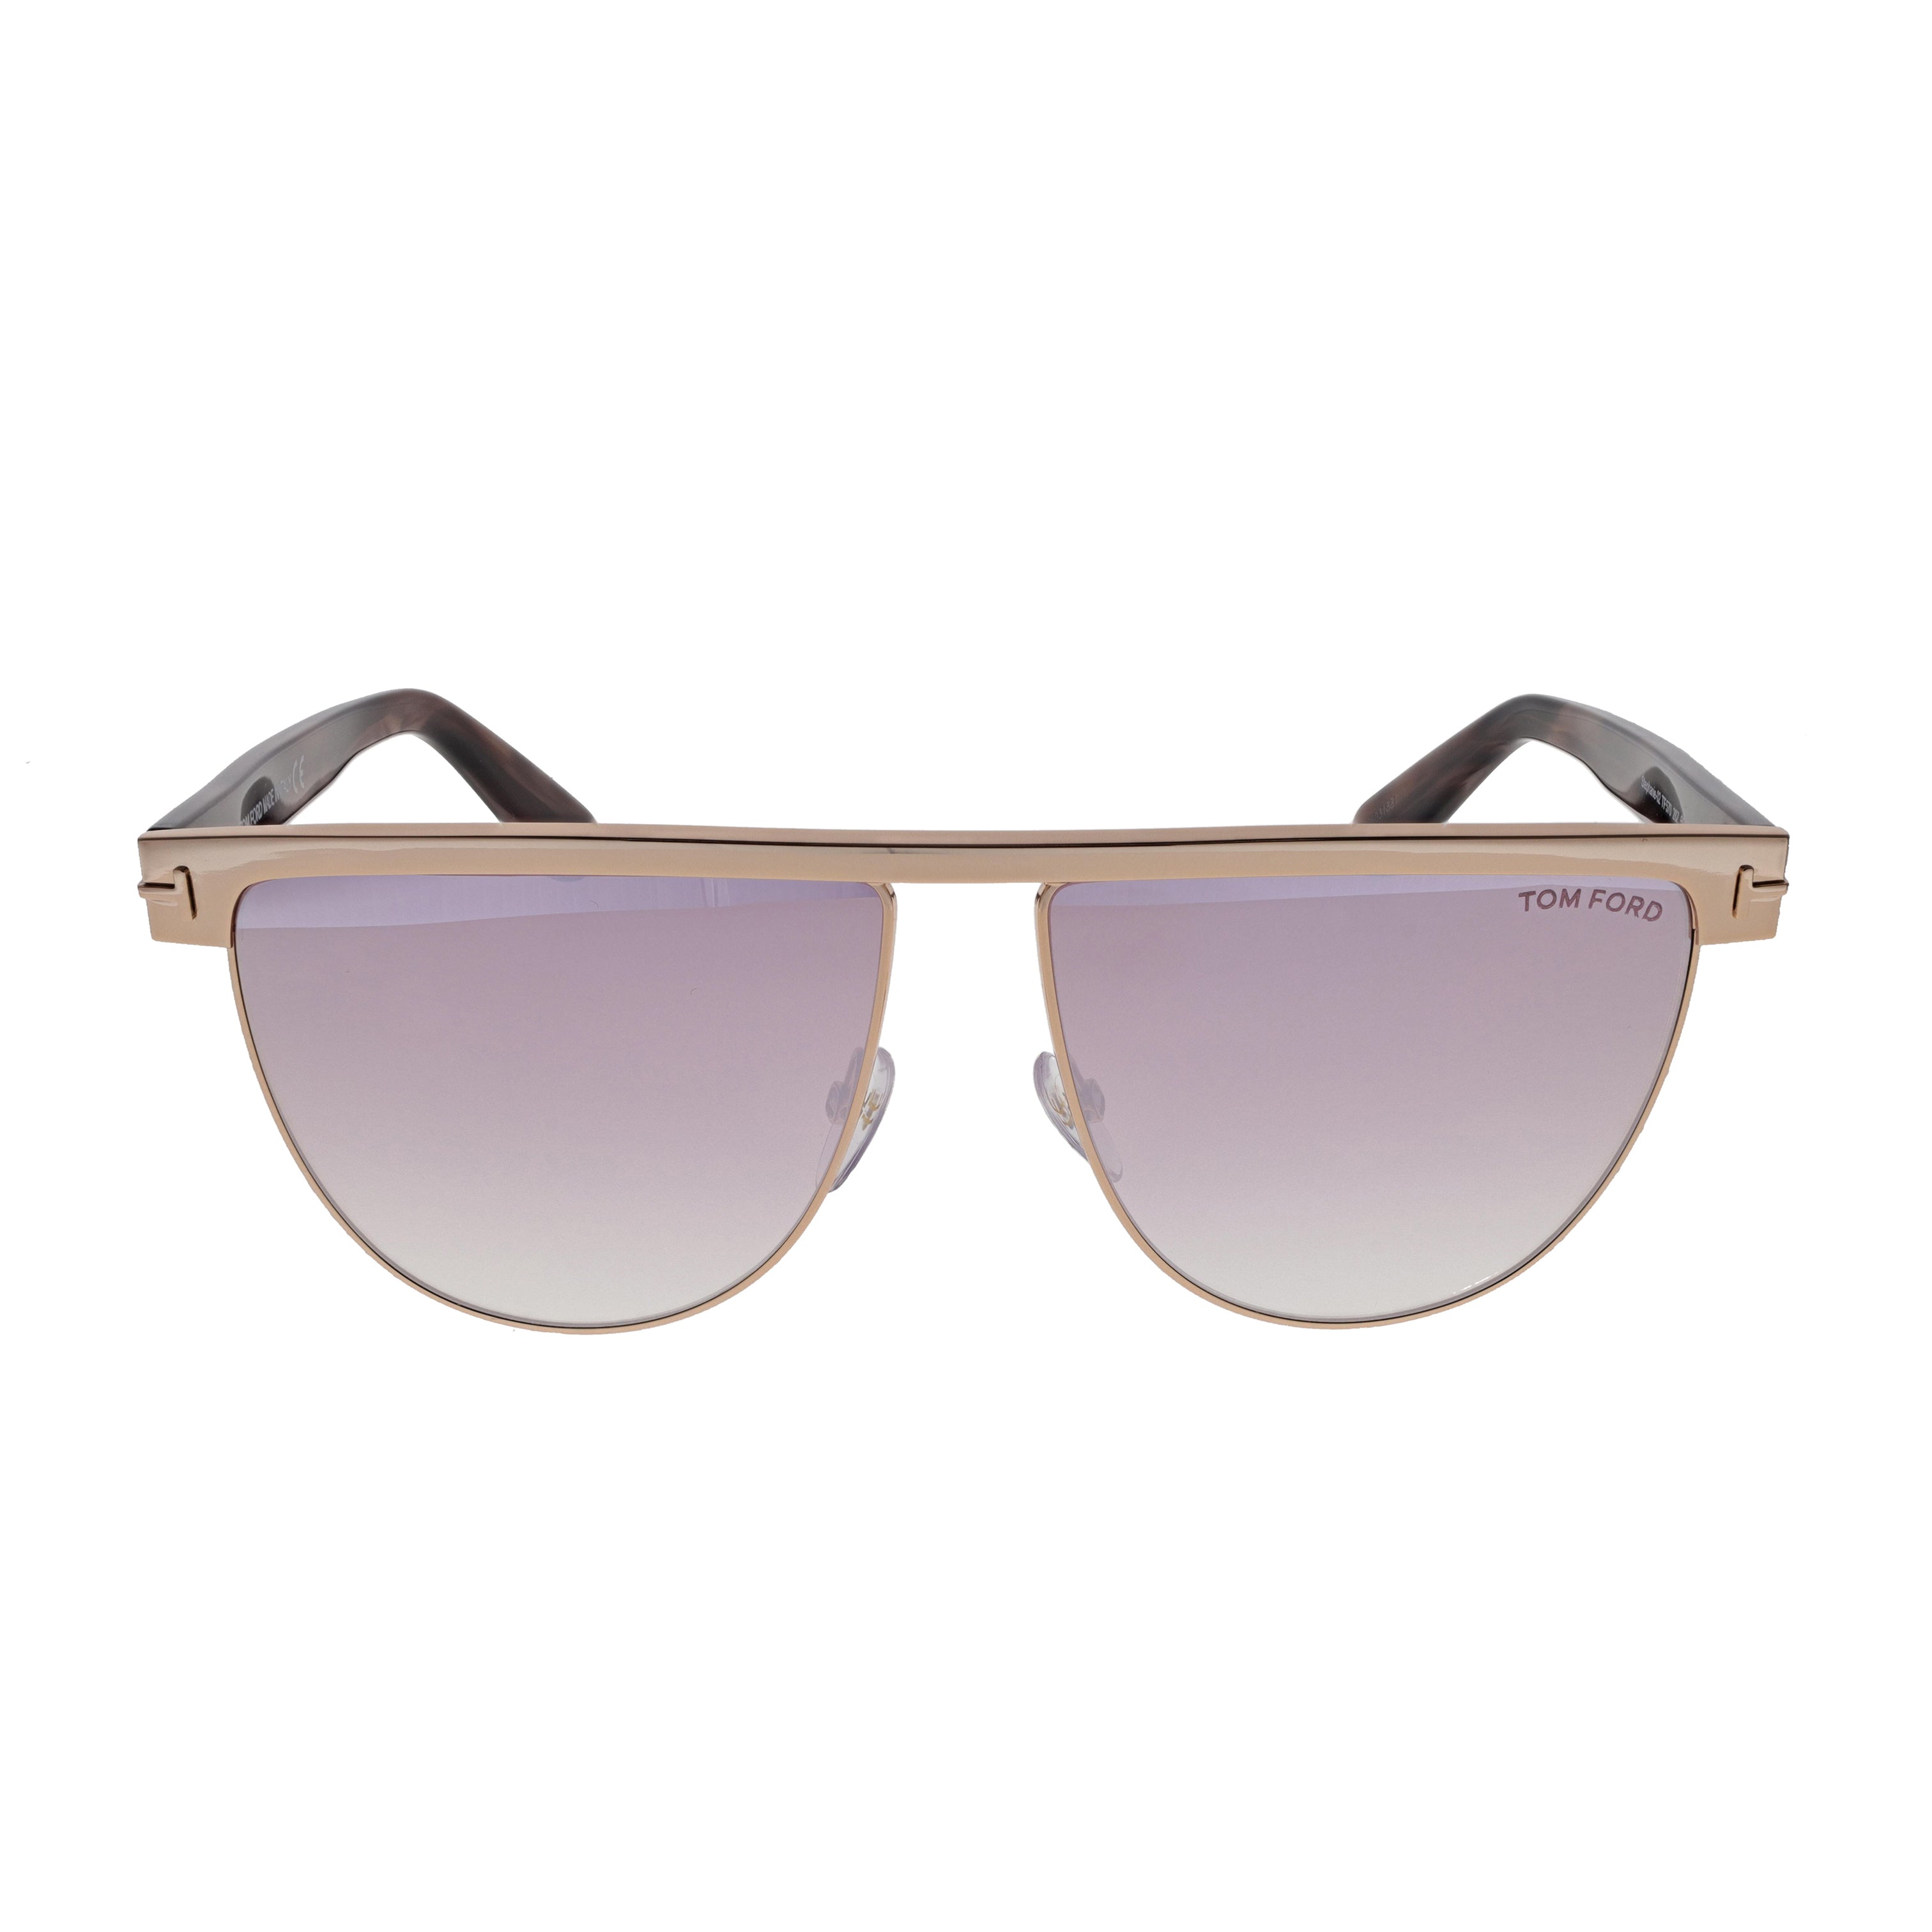 Tom Ford Sunglasses - Stephanie - FT0570-28Z